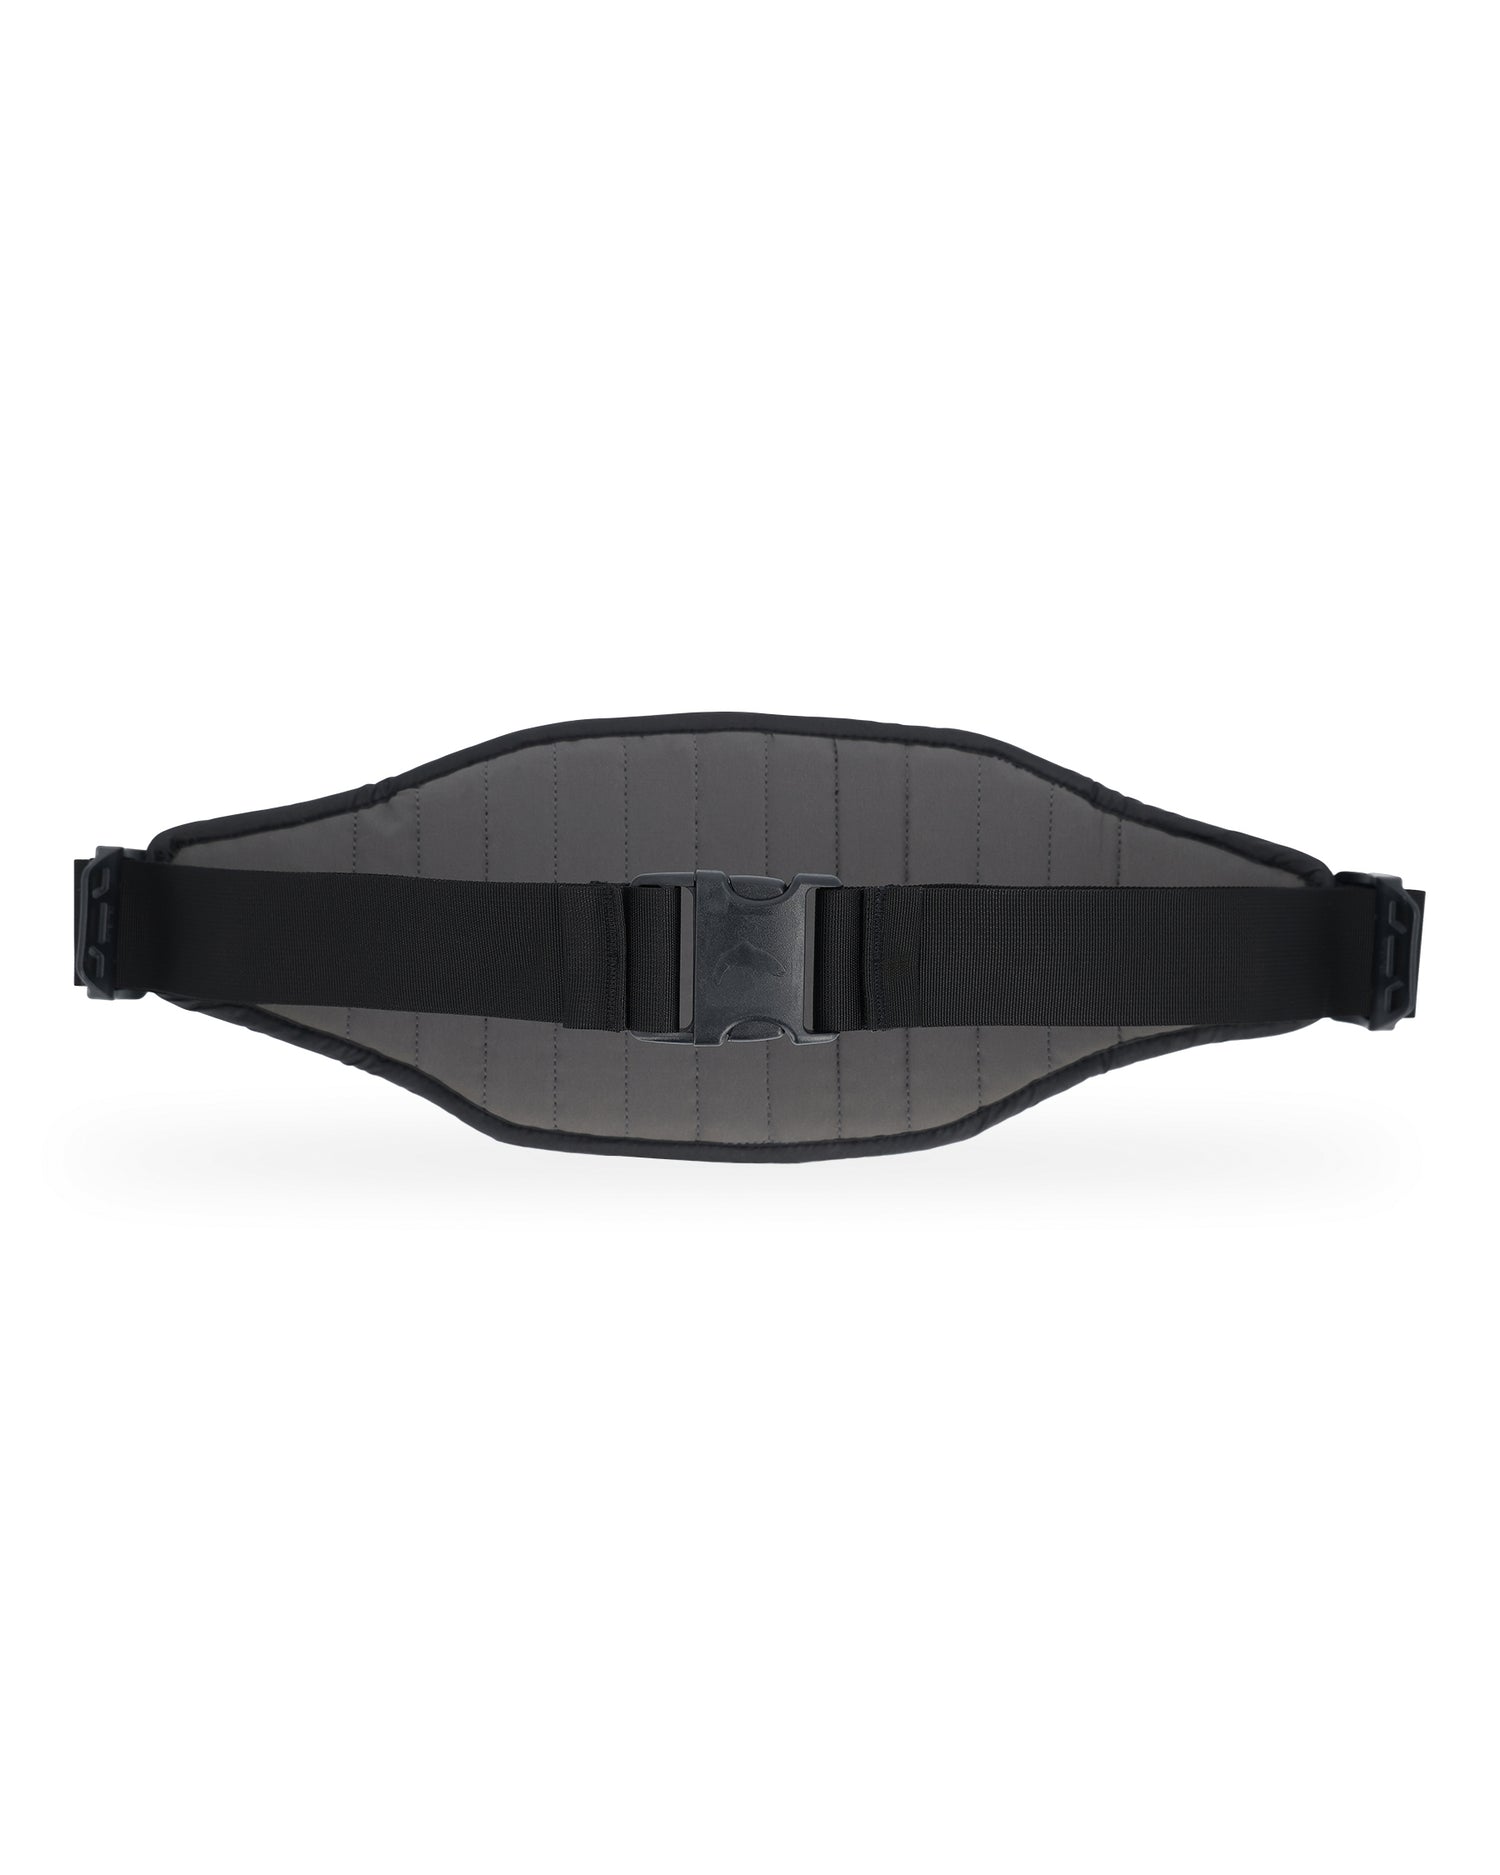 Simms Access Tech Belt - Black